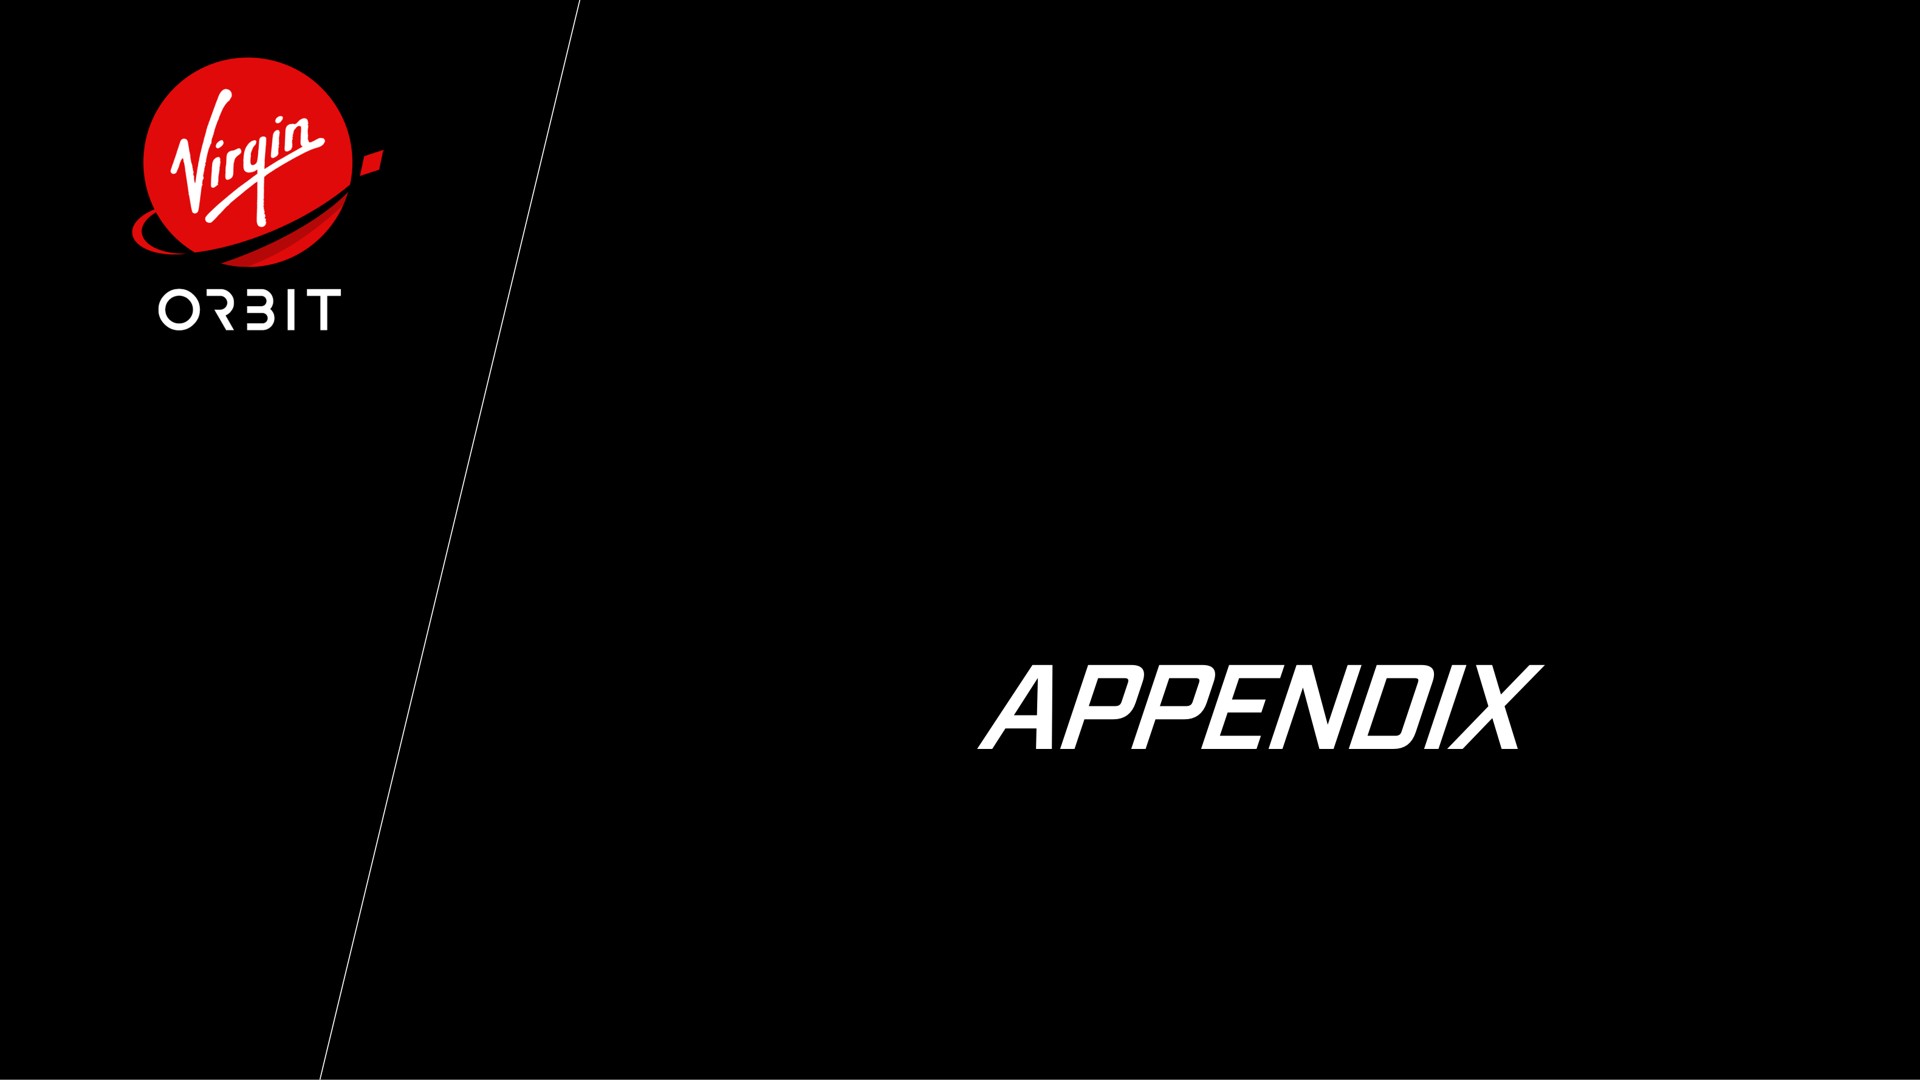 appendix | Virgin Orbit